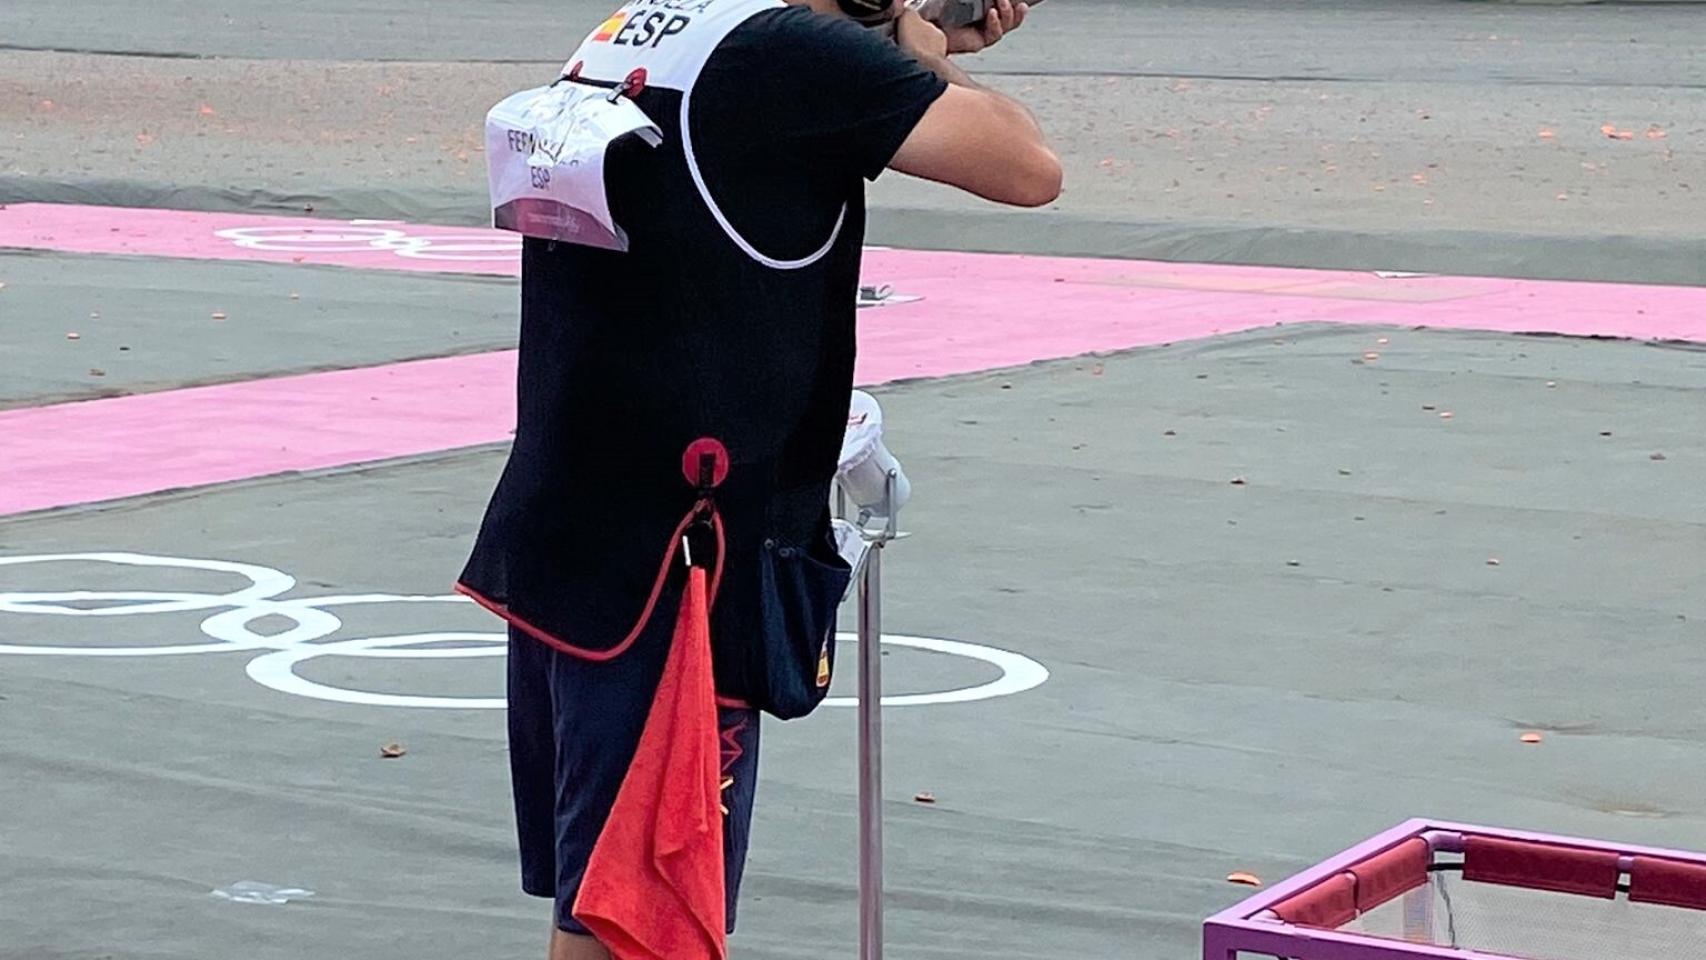 Alberto Fernández compitiendo en foso masculino tiro olímpico en los JJOO de Tokio 2020